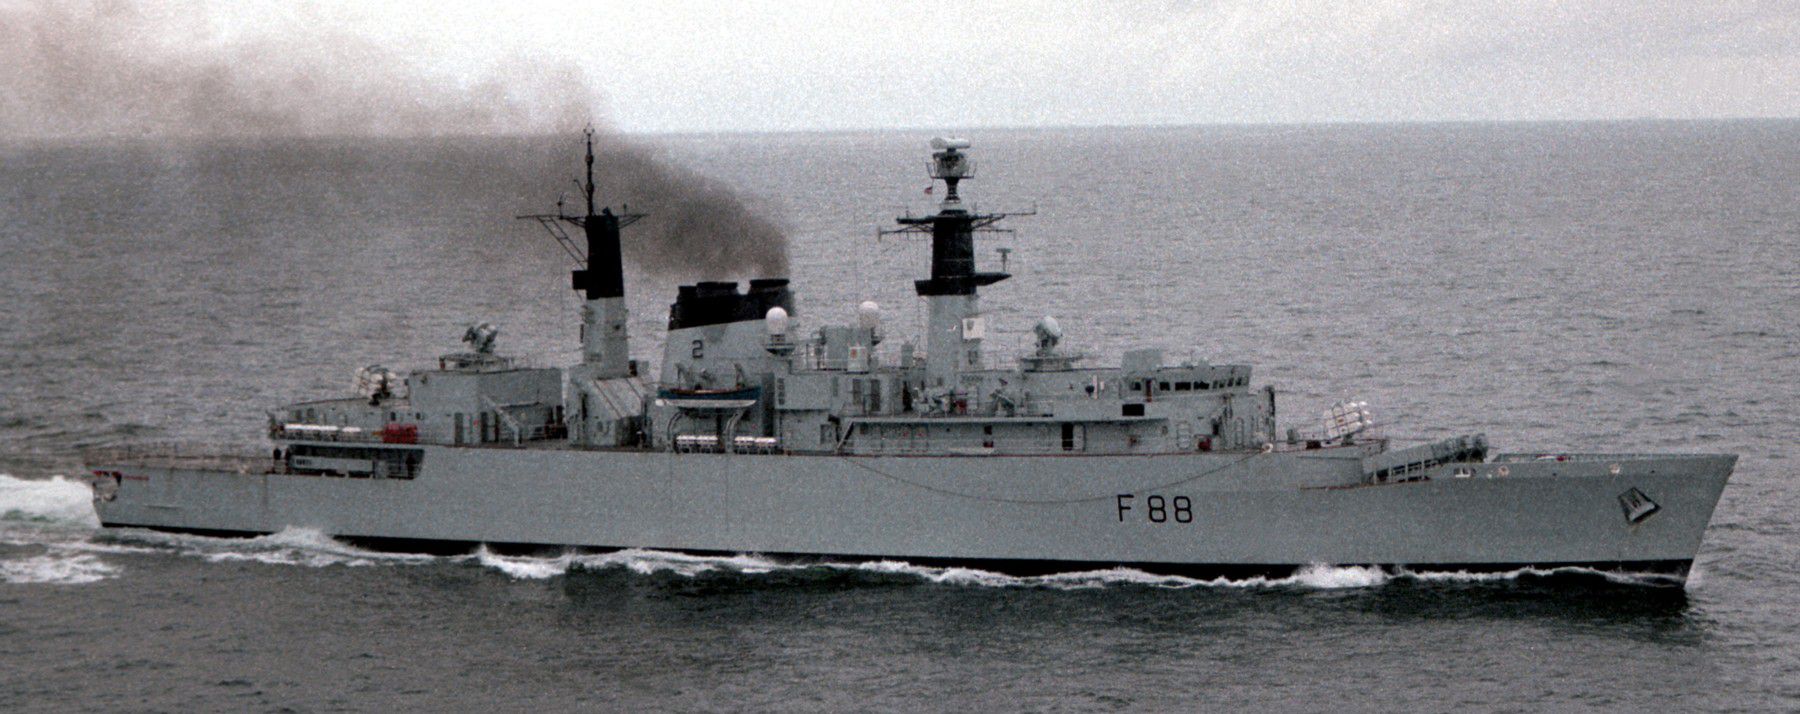 La fragata misilística Tipo 22 HMS Broadsword estaba equipada con los Sea Wolf que alcanzaban una distancia de 15 km.  En 1995 fue adquirida por la marina brasileña que la rebautizó con el nombre de Greenhalgh